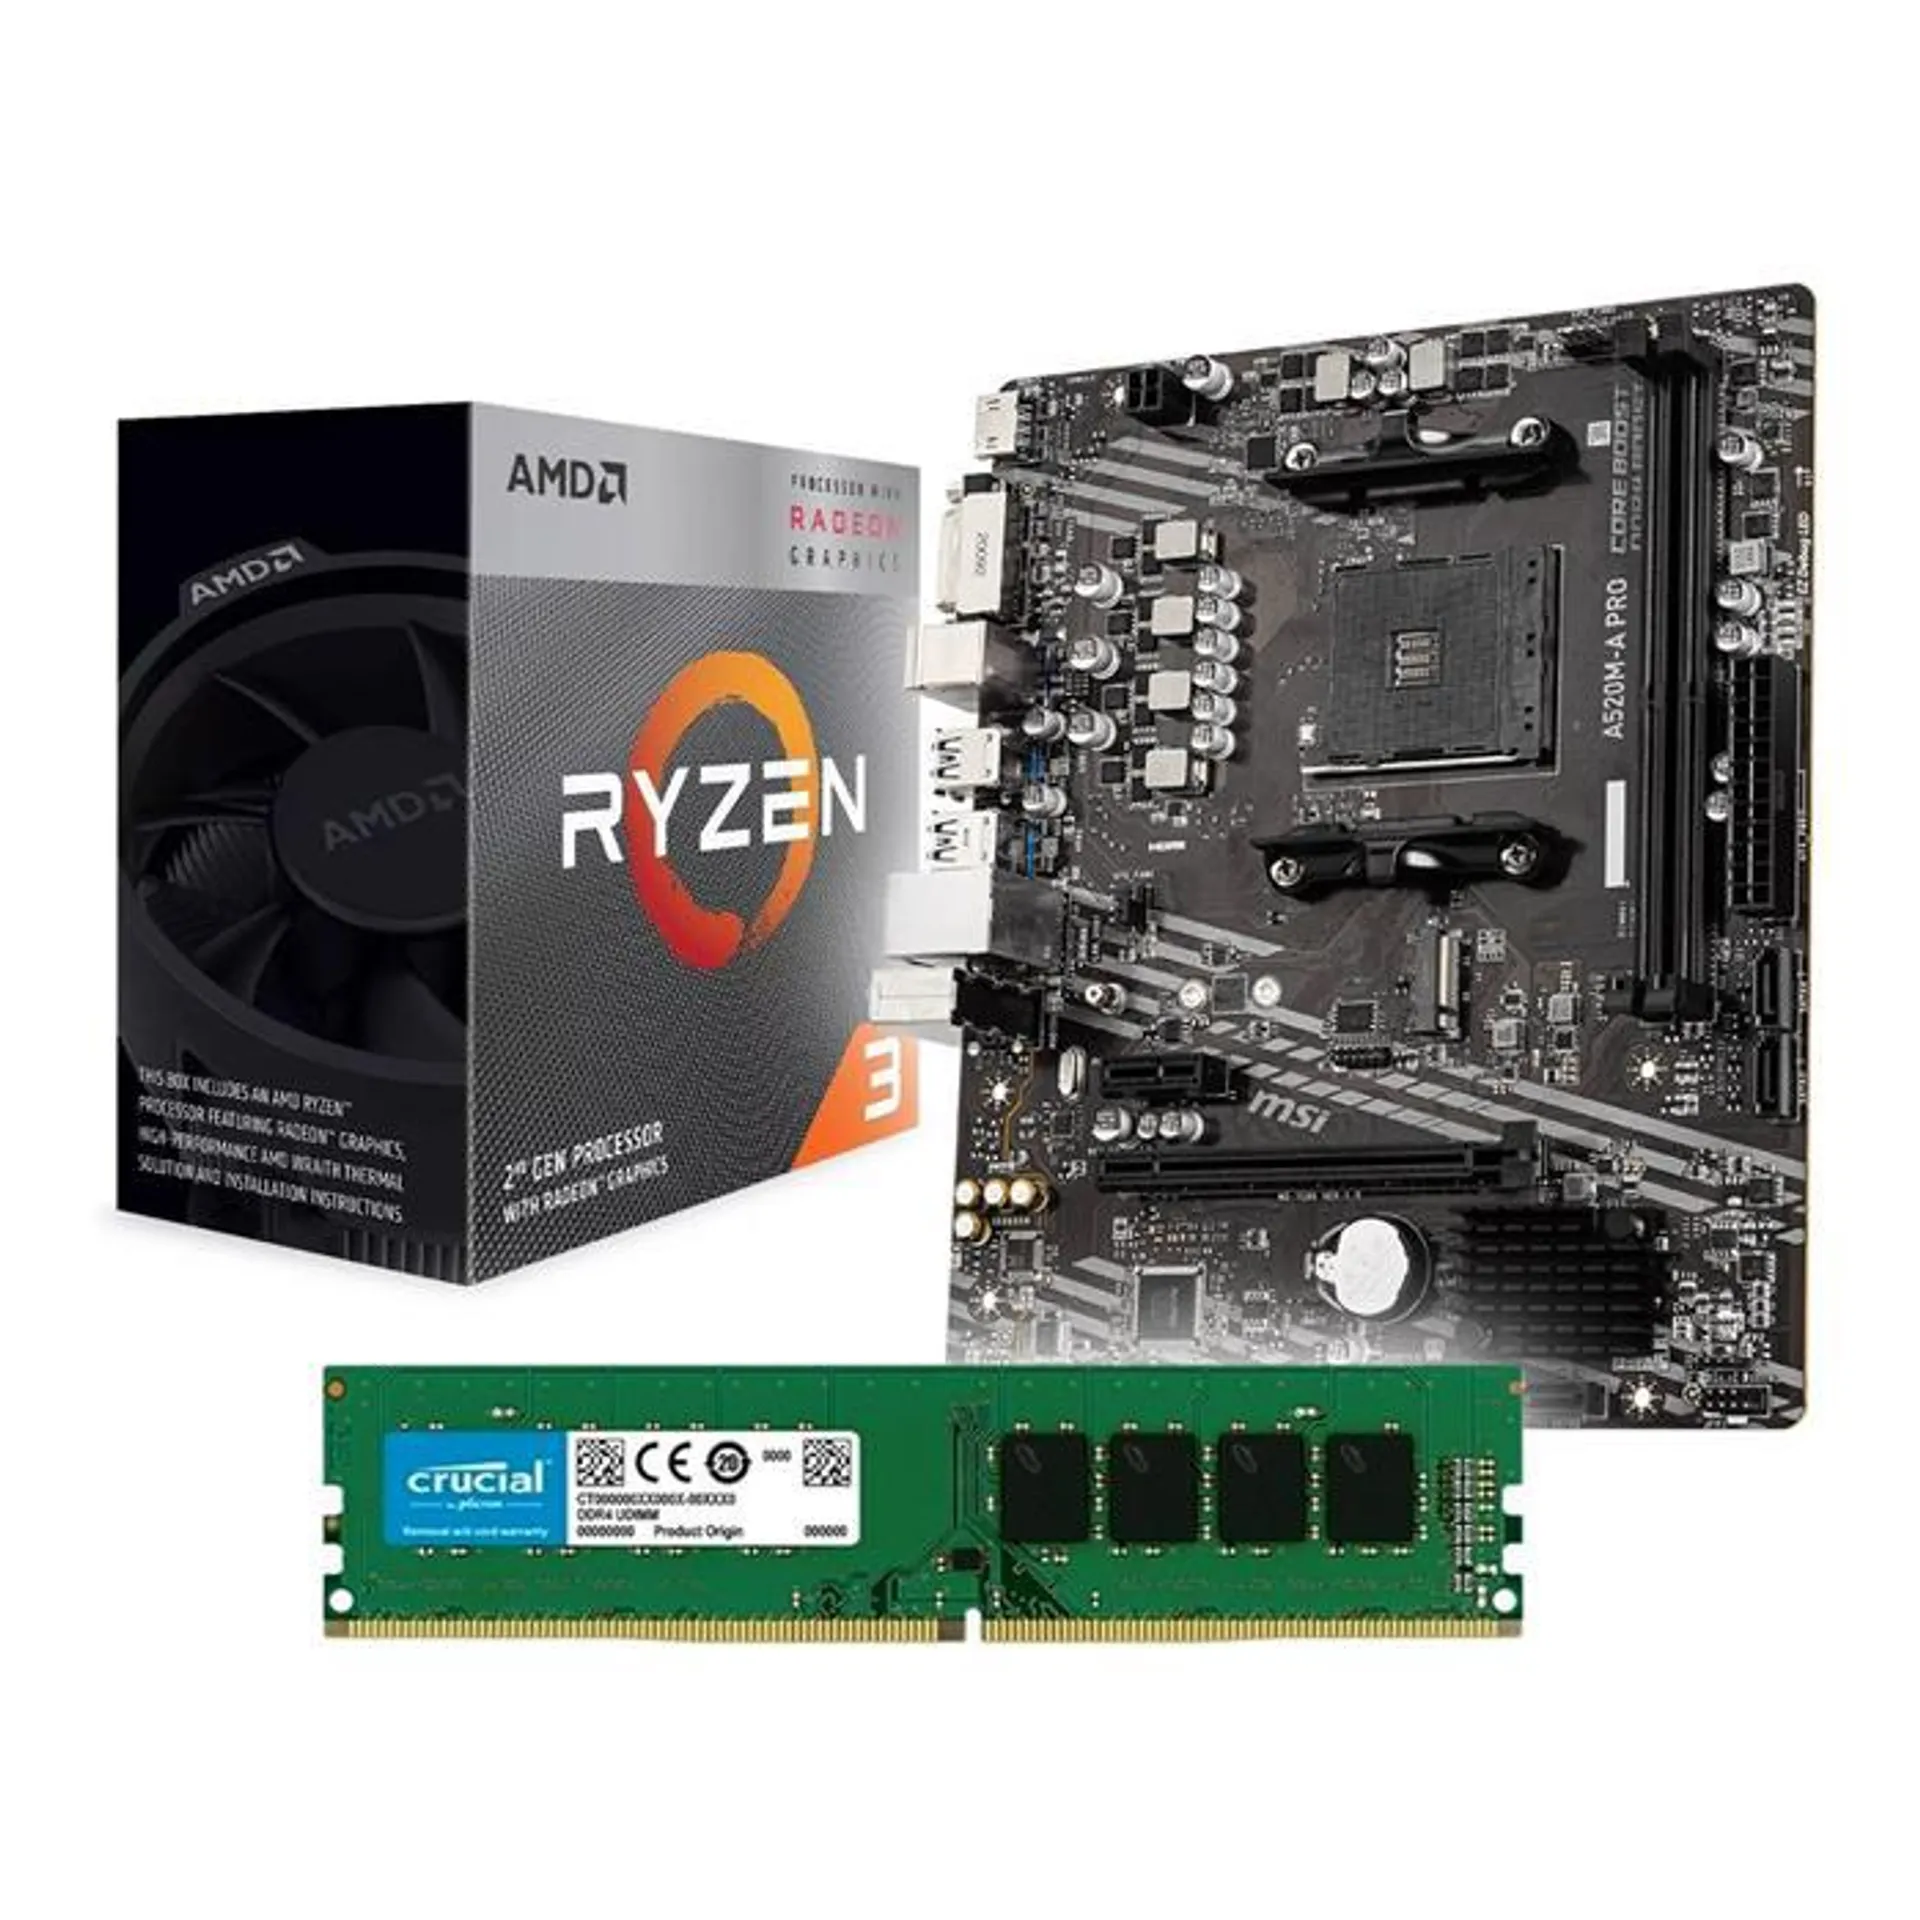 KIT ACTUALIZACION AMD RYZEN 3 3200G + MSI A520M-A PRO + 8GB DDR4 2666